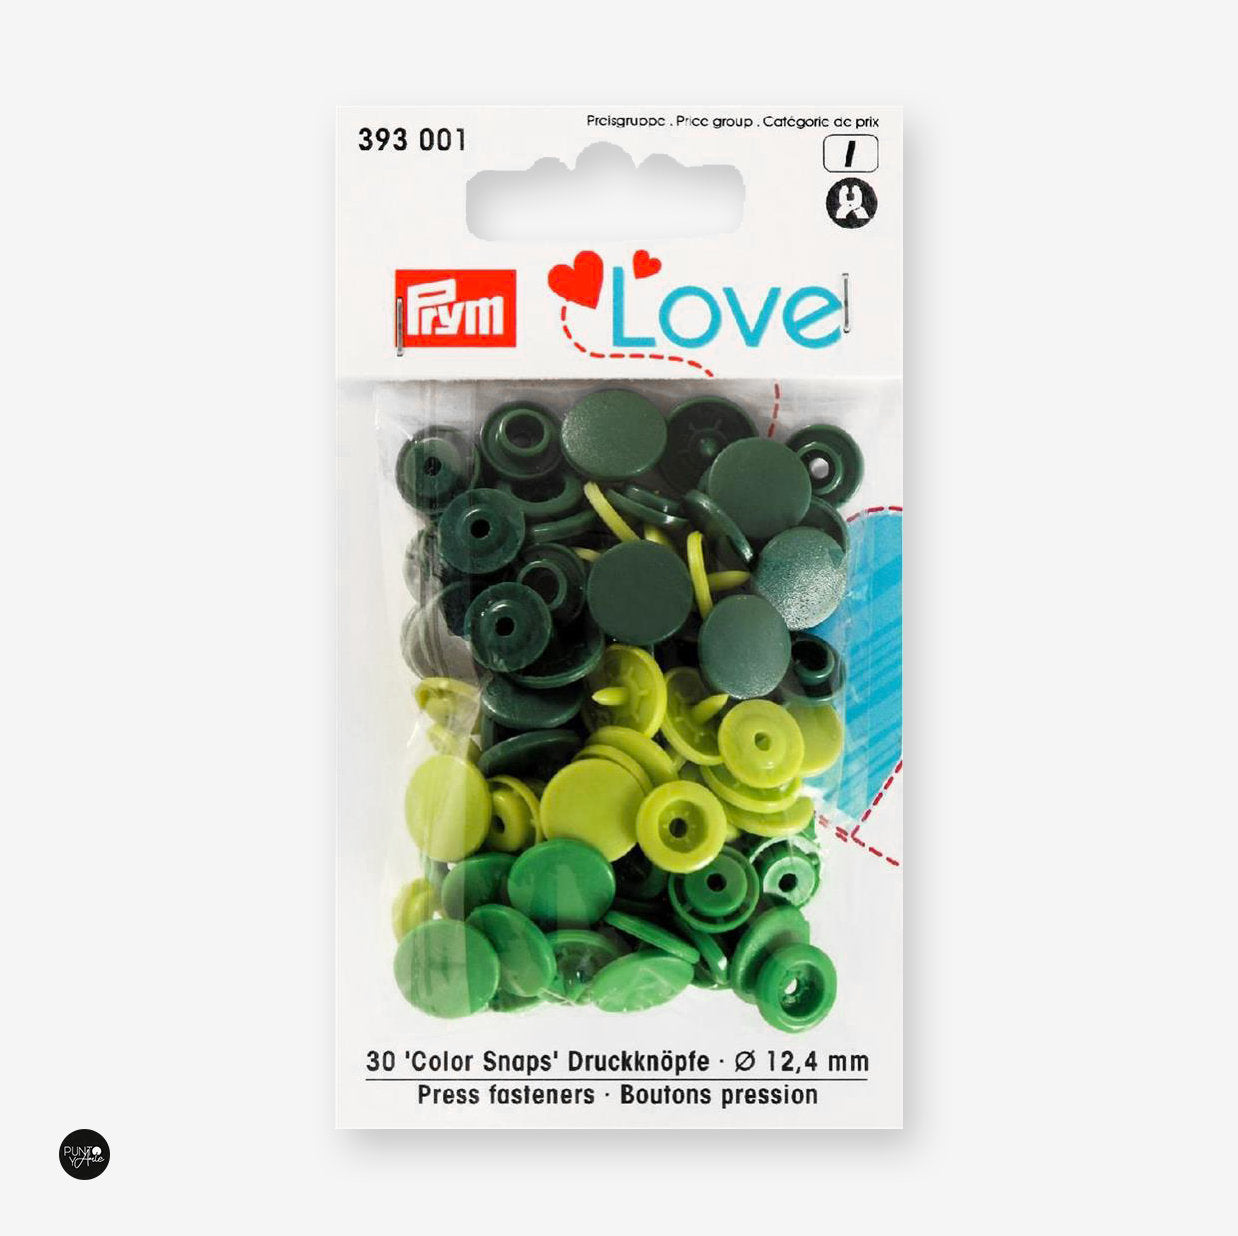 Botones de Presión Prym Love Color Snap 12,4mm